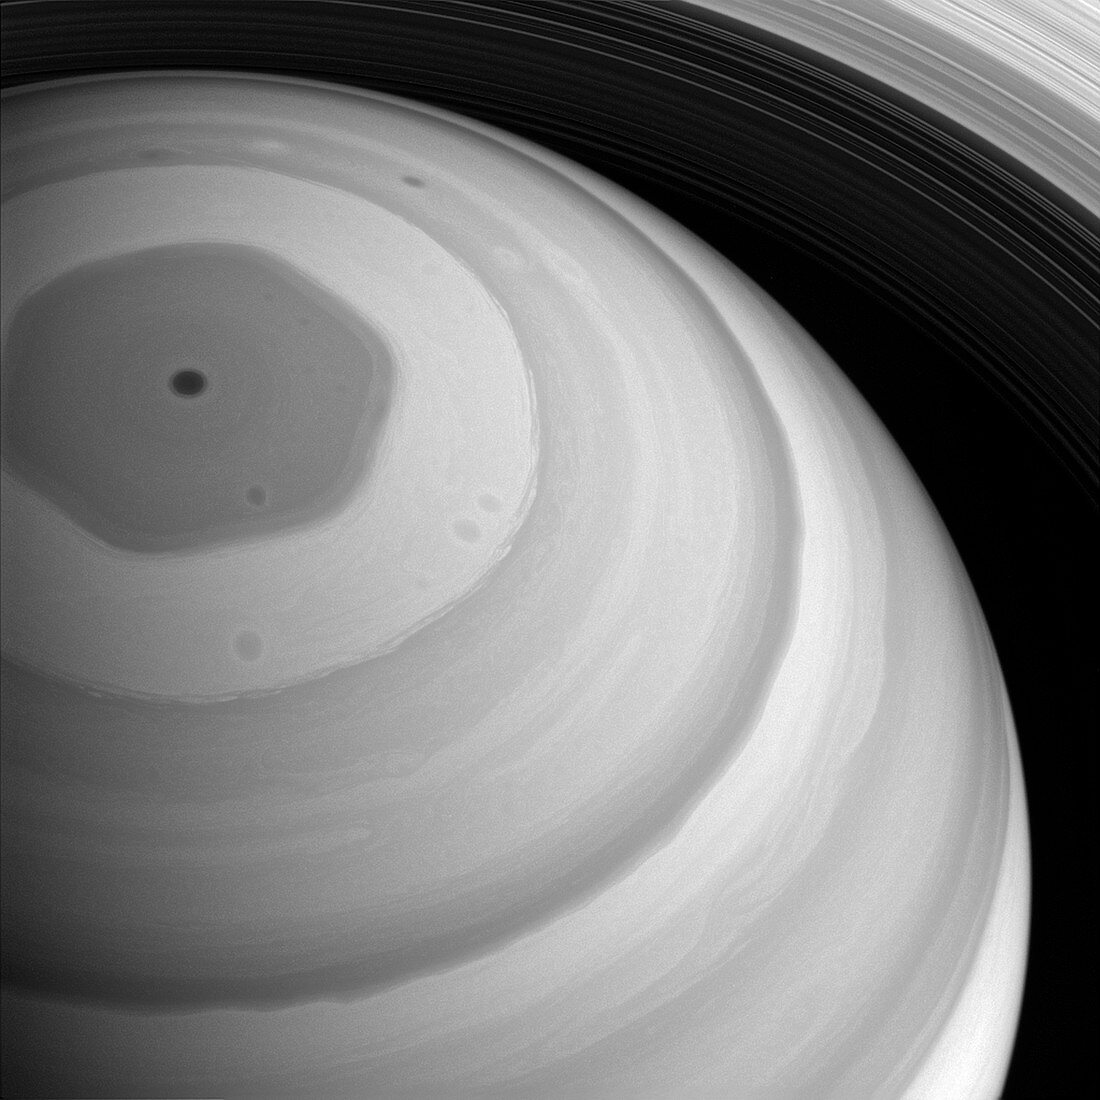 Saturn, Cassini image